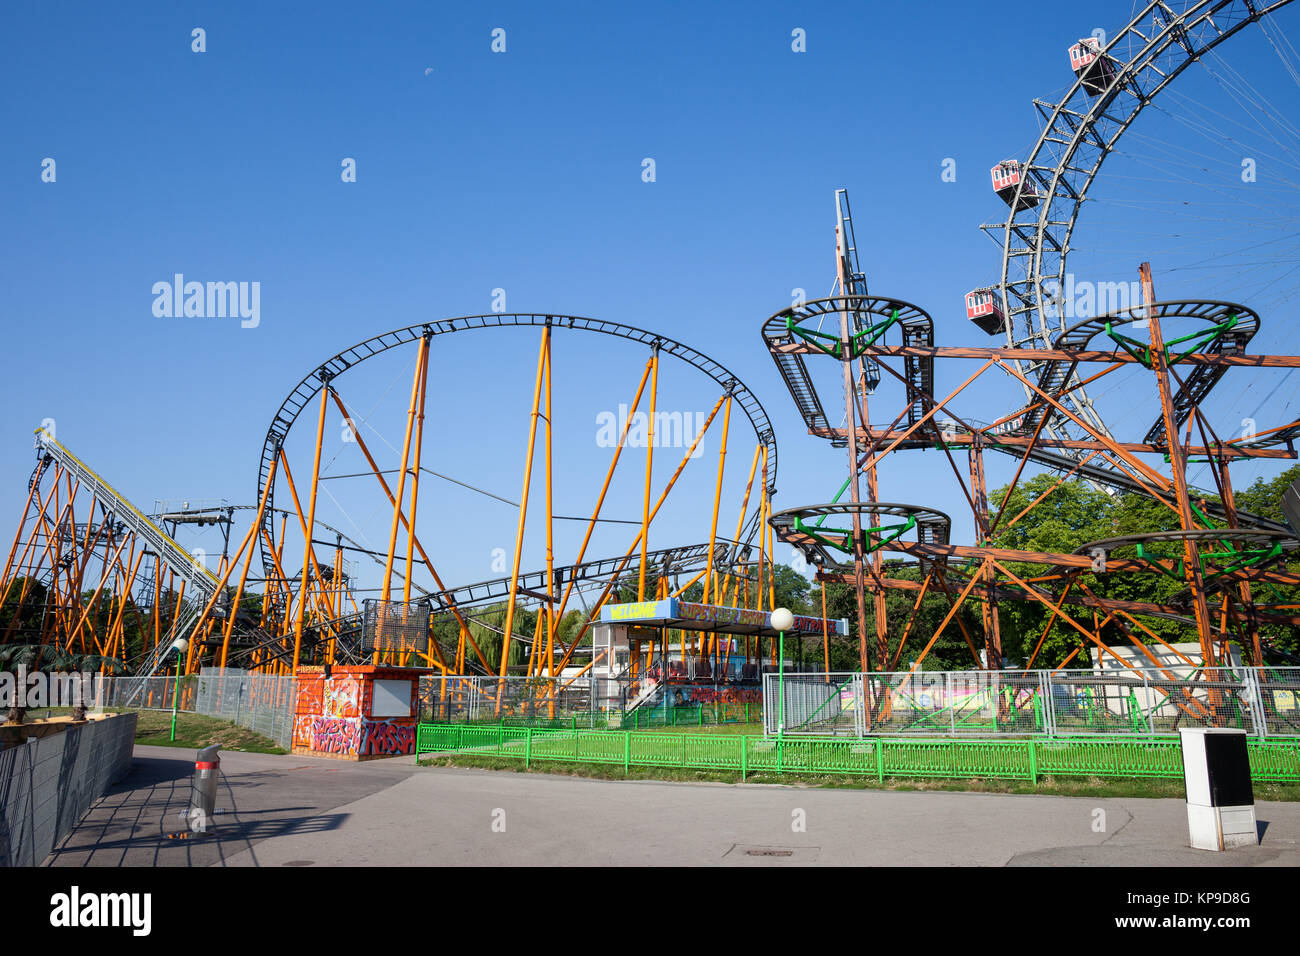 Super 8er Bahn et Dizzy Mouse coasters de rouleau, partie de Grande Roue dans le parc d'attractions Prater de Vienne, Autriche, Europe ville Banque D'Images